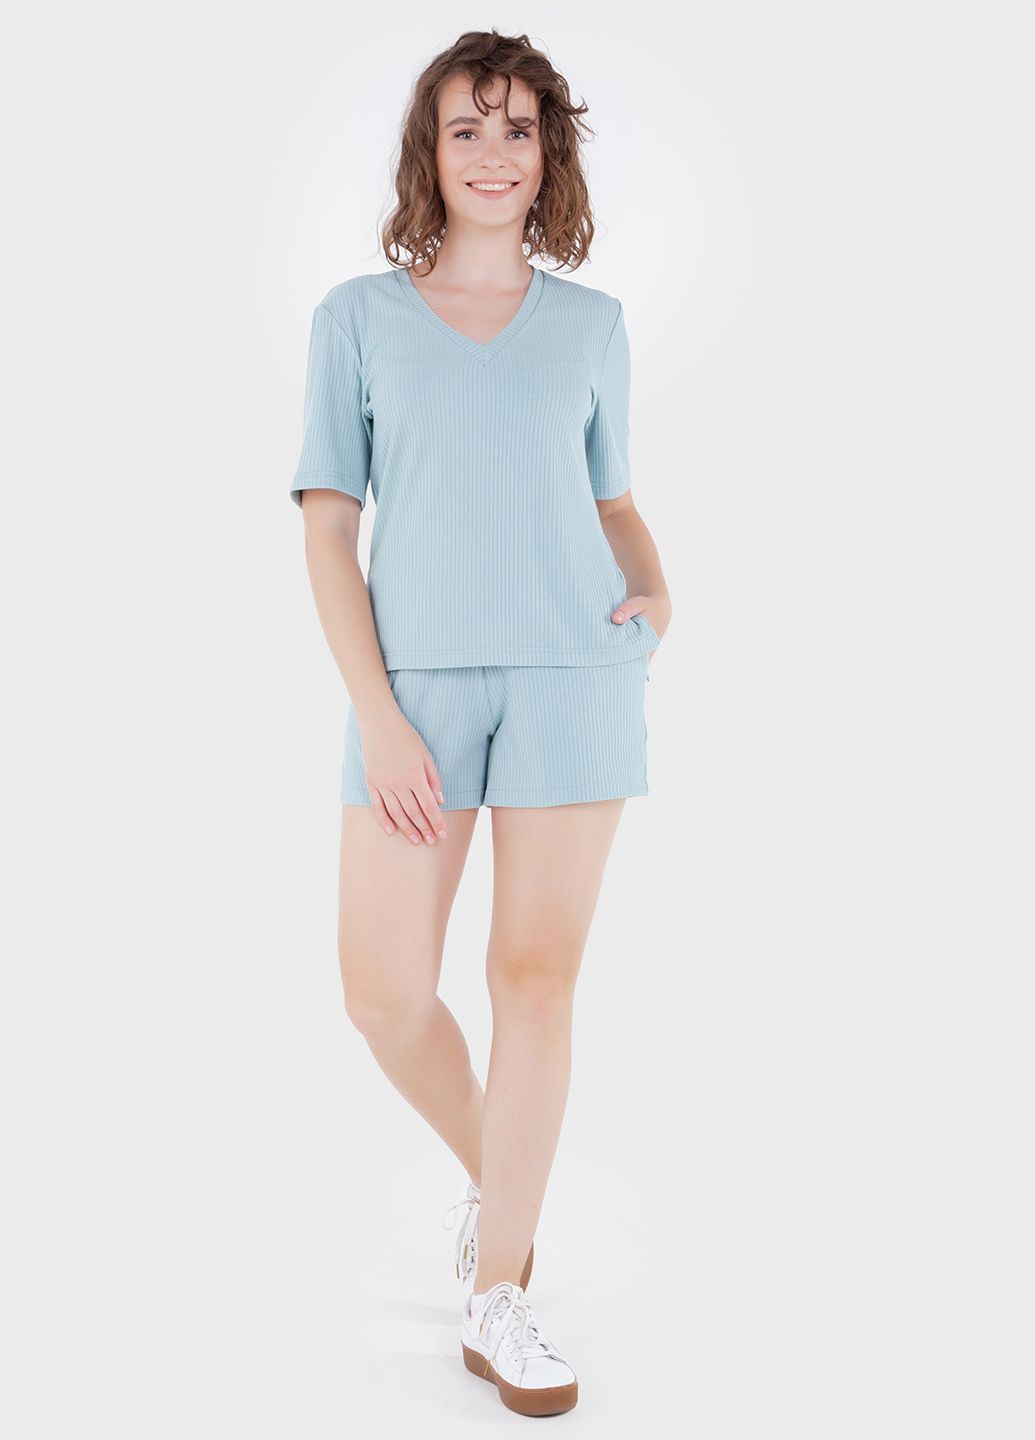 Купить Легкая футболка женская в рубчик Merlini Корунья 800000022 - Голубой, 42-44 в интернет-магазине